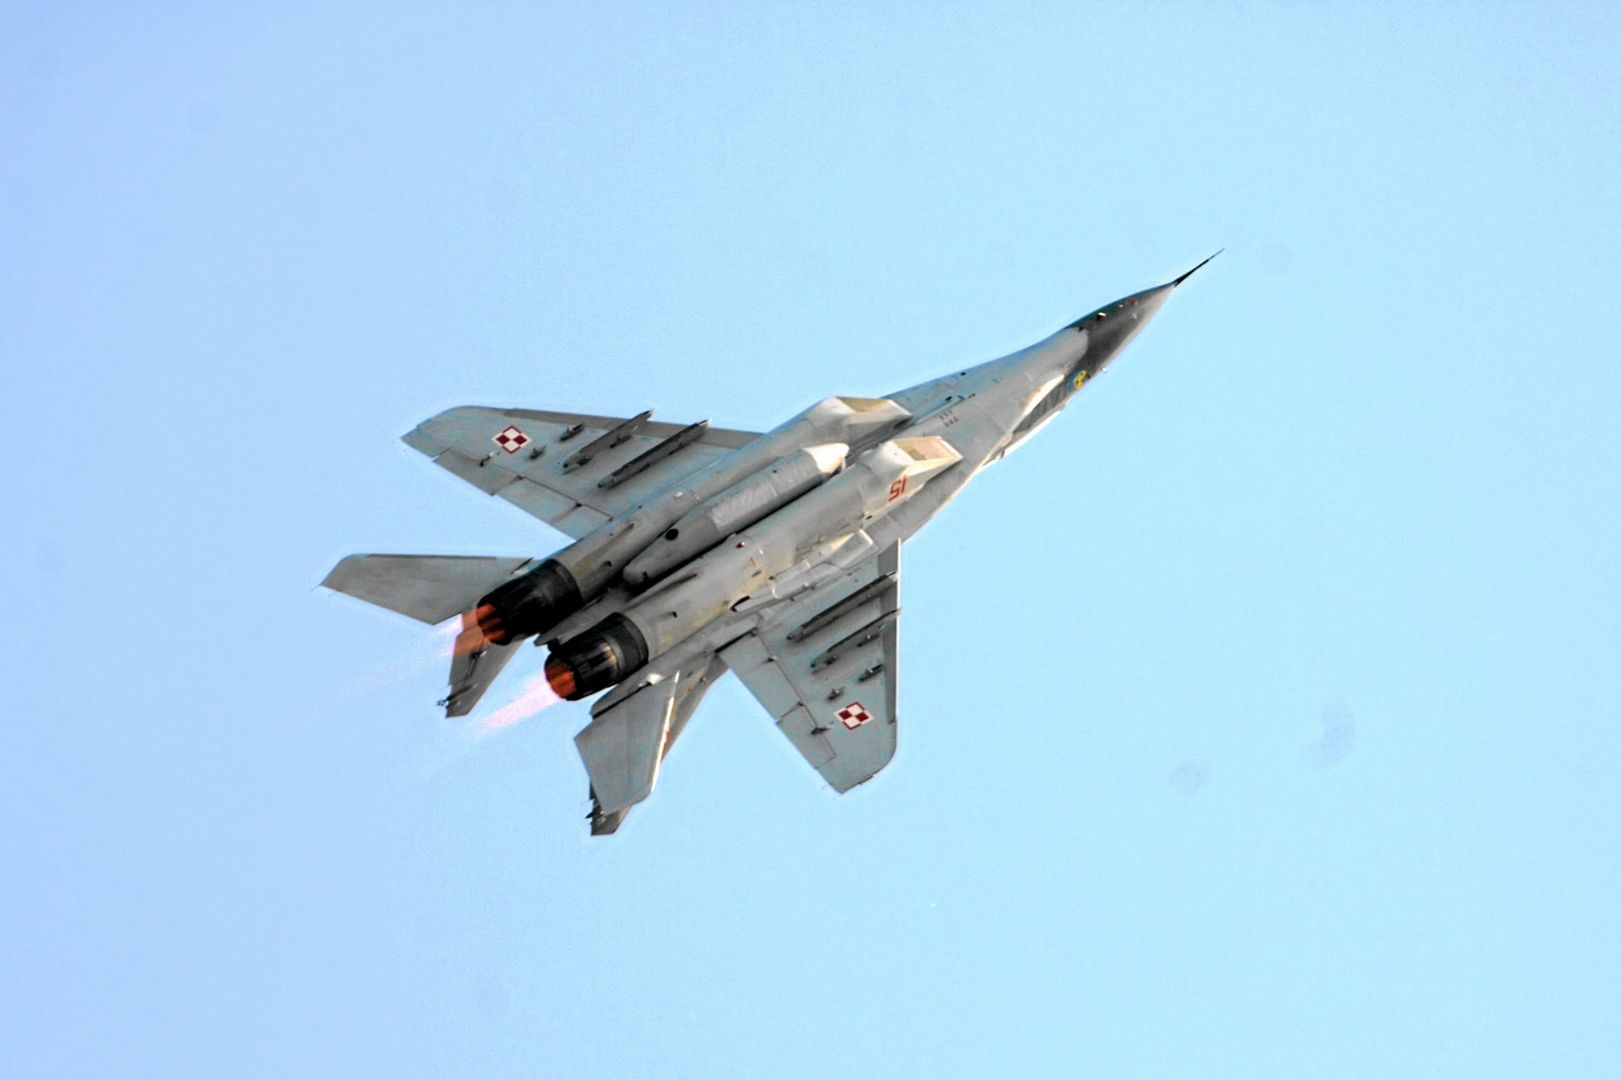 Wojsko ma około 30 maszyn MiG-29, które stacjonują w Mińsku Mazowieckim i Malborku